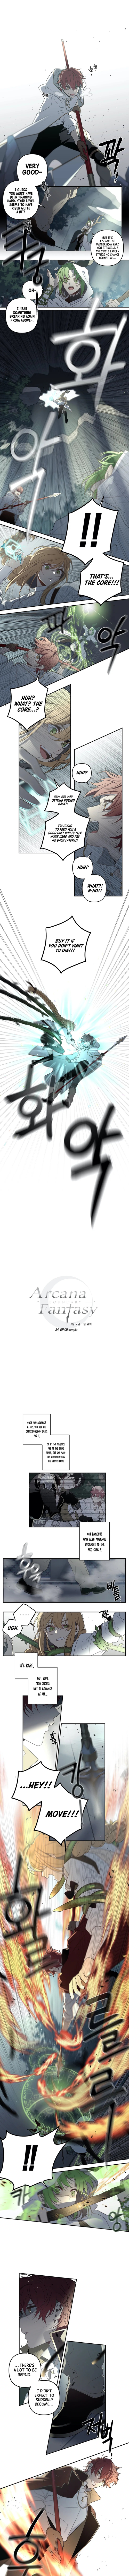 Arcana Fantasy - Page 2